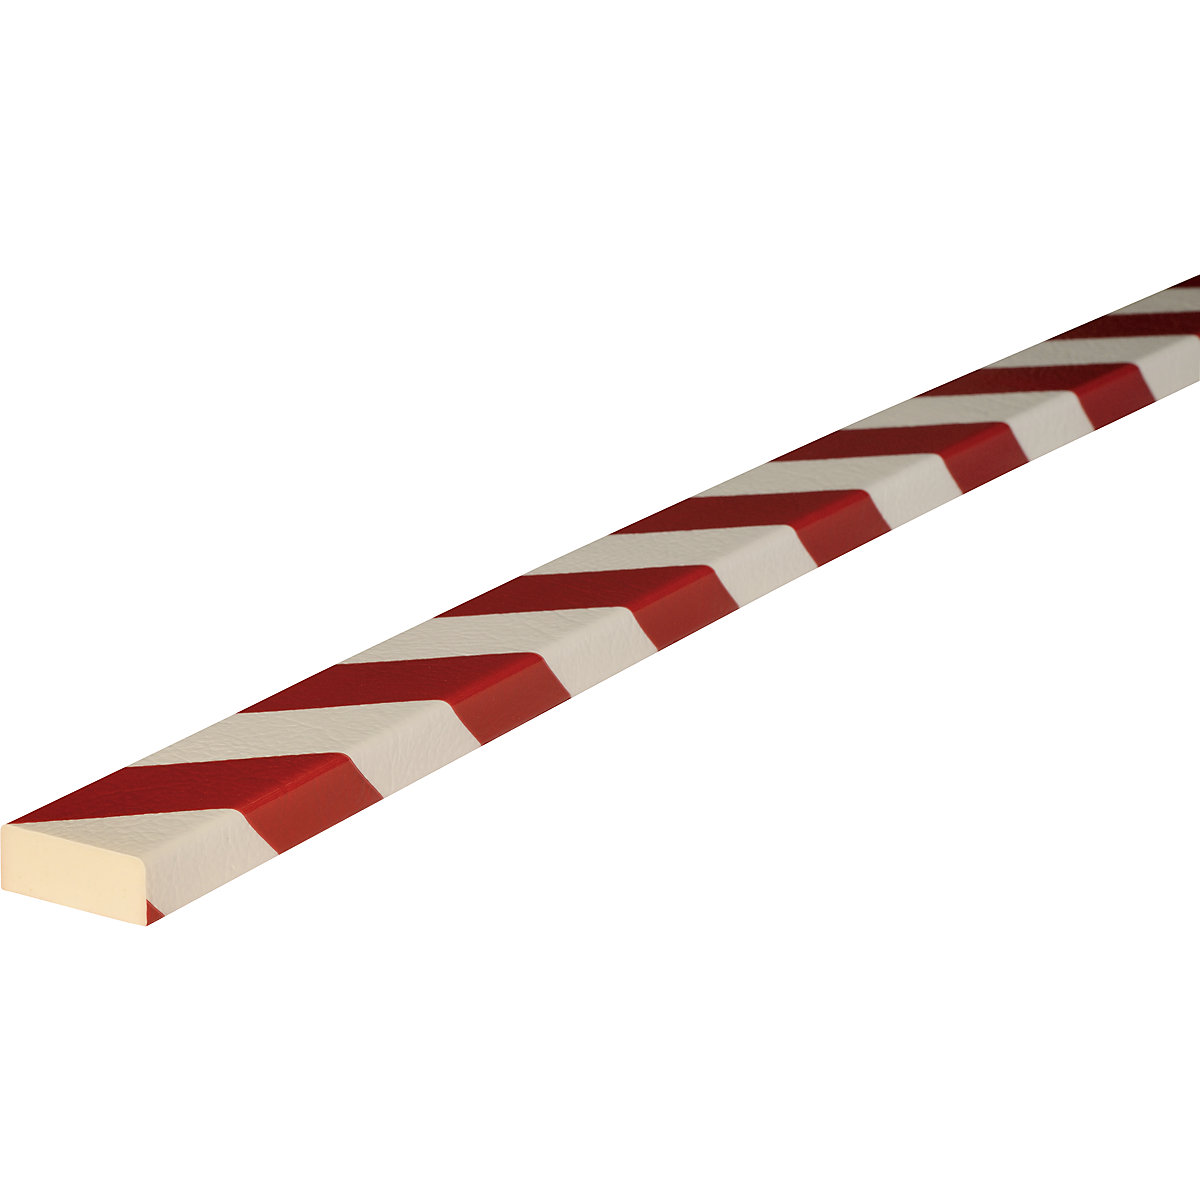 Protection des surfaces Knuffi® – SHG, type D, 1 rouleau de 50 m, rouge/blanc